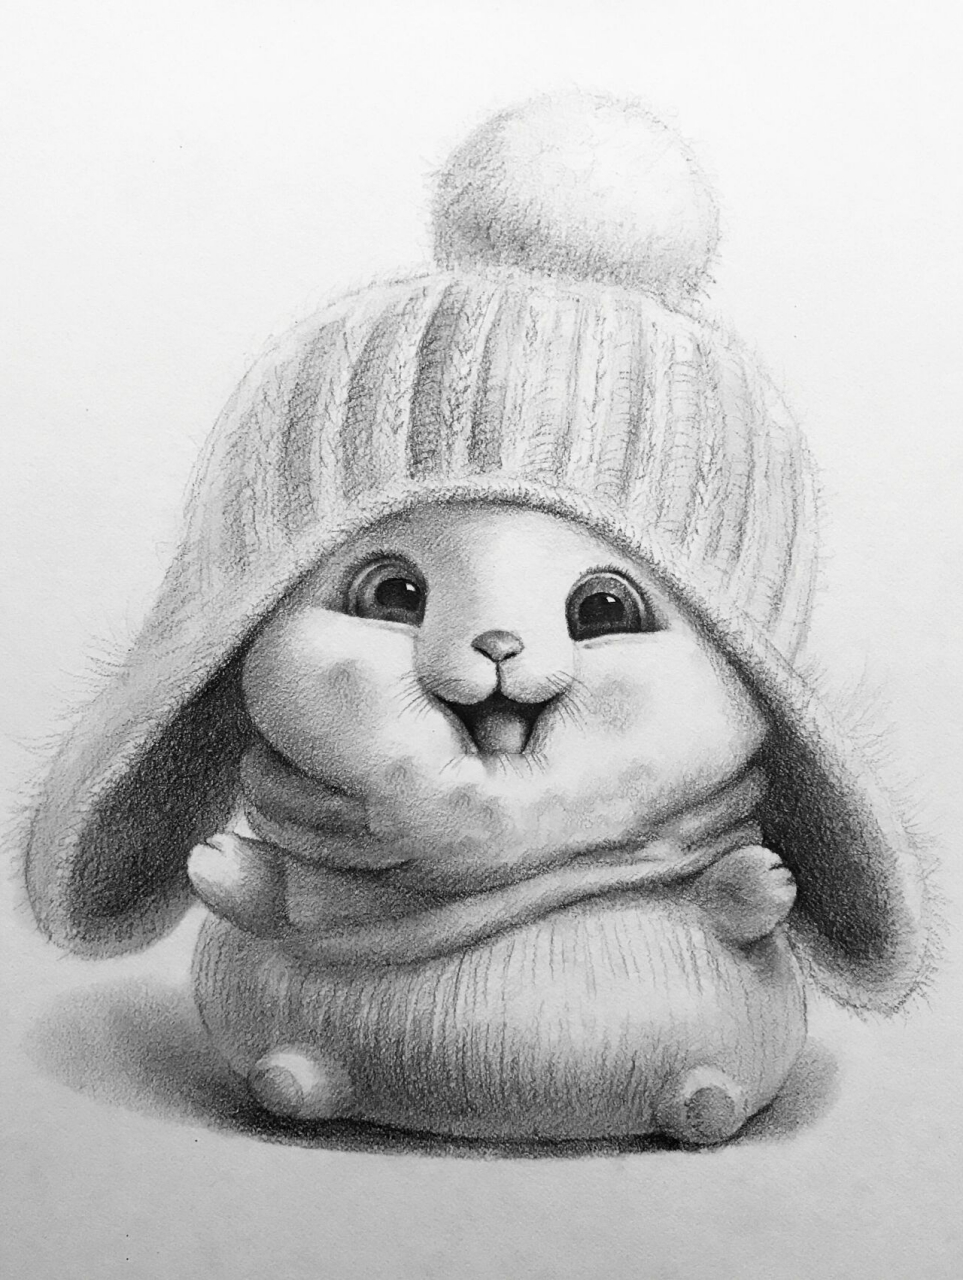 可爱兔子素描绘画 不同兔子绘画 素描兔子